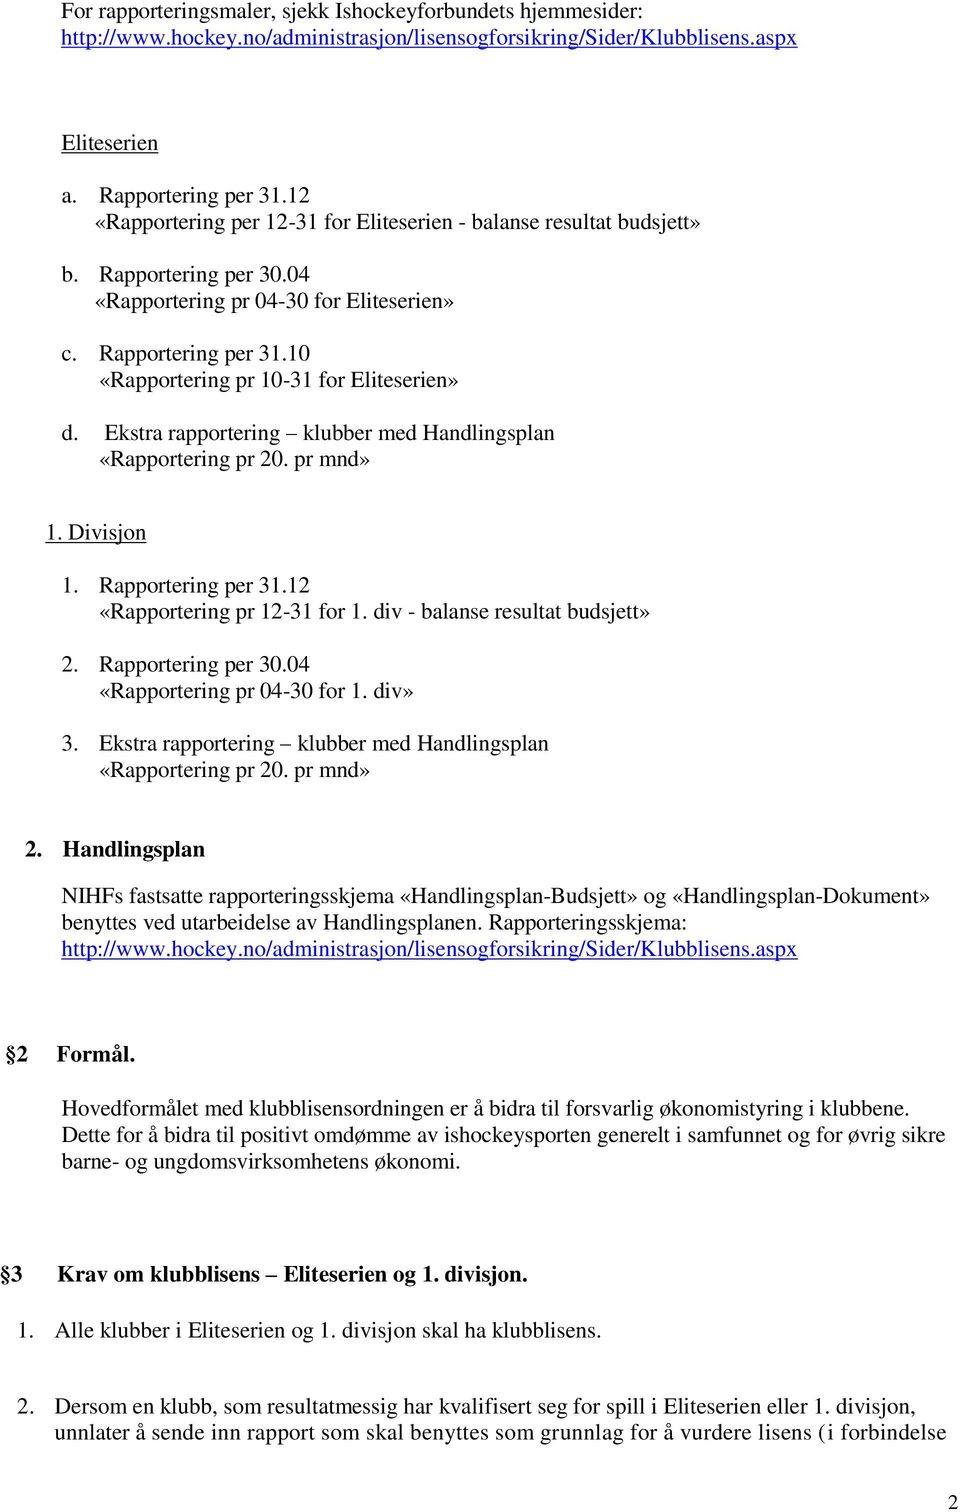 10 «Rapportering pr 10-31 for Eliteserien» d. Ekstra rapportering klubber med Handlingsplan «Rapportering pr 20. pr mnd» 1. Divisjon 1. Rapportering per 31.12 «Rapportering pr 12-31 for 1.